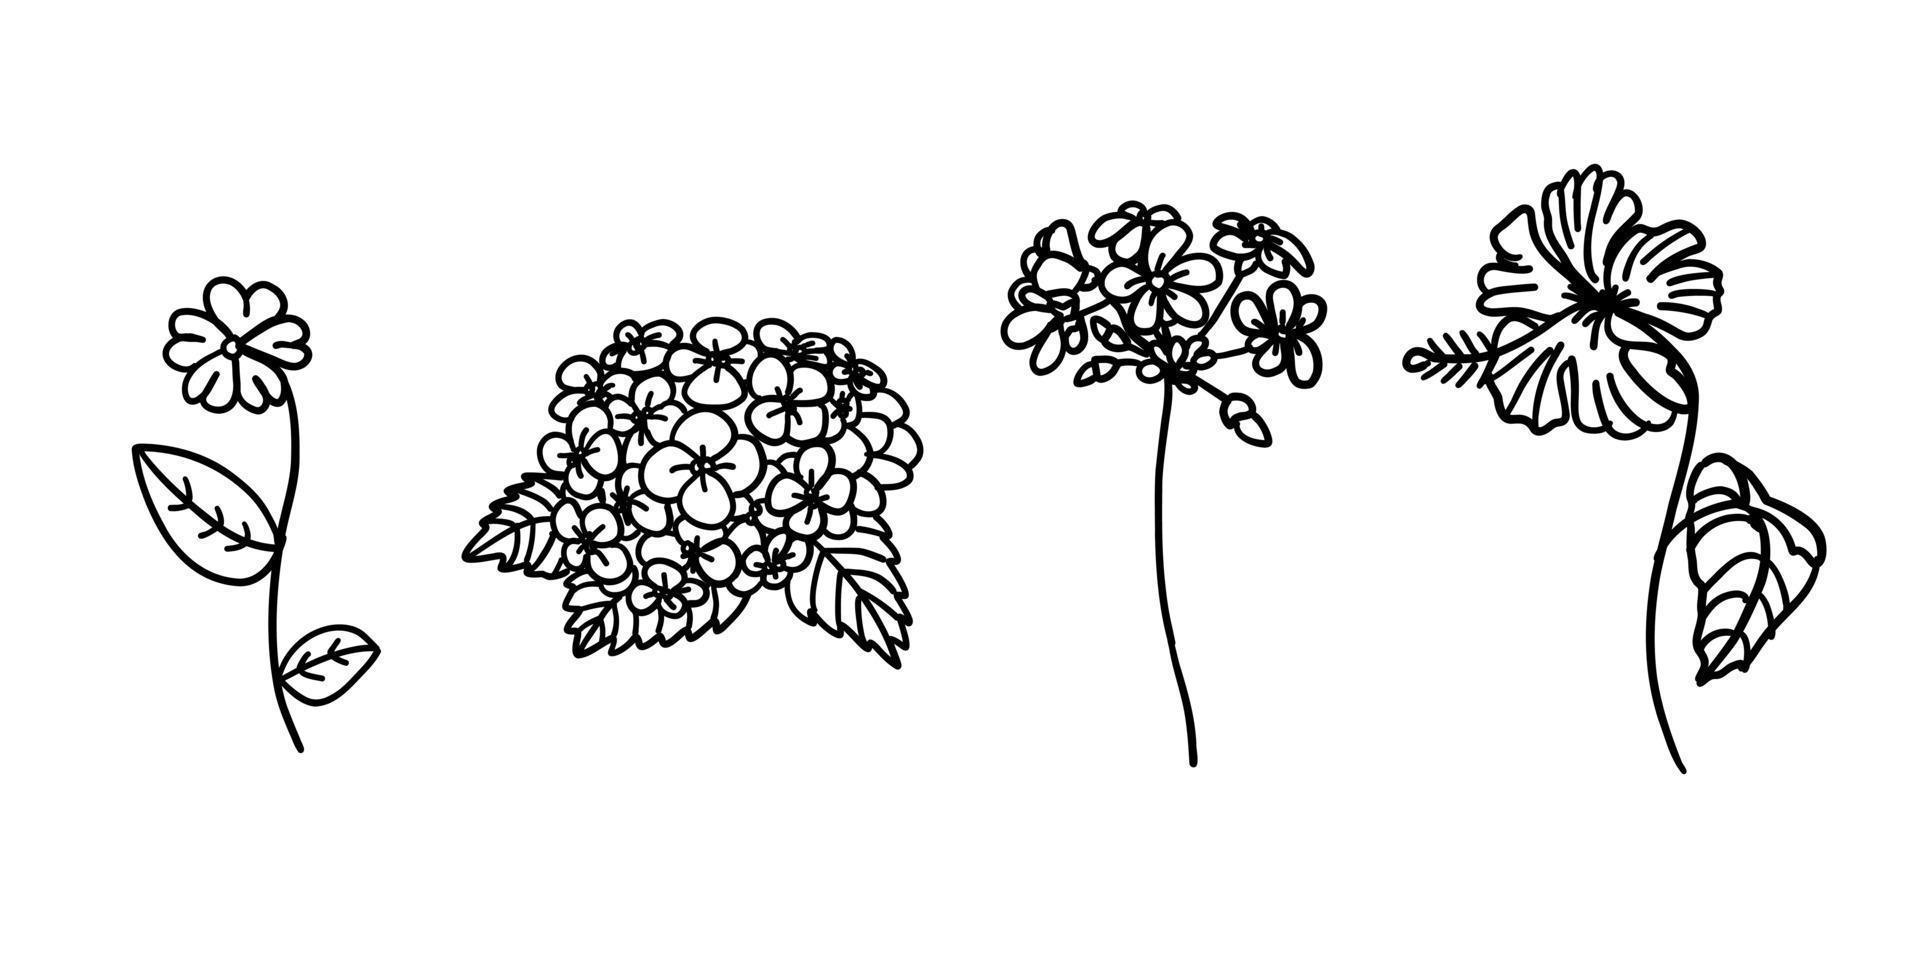 flores definidas em estilo plano de contorno doodle. ilustração vetorial em fundo branco. vetor